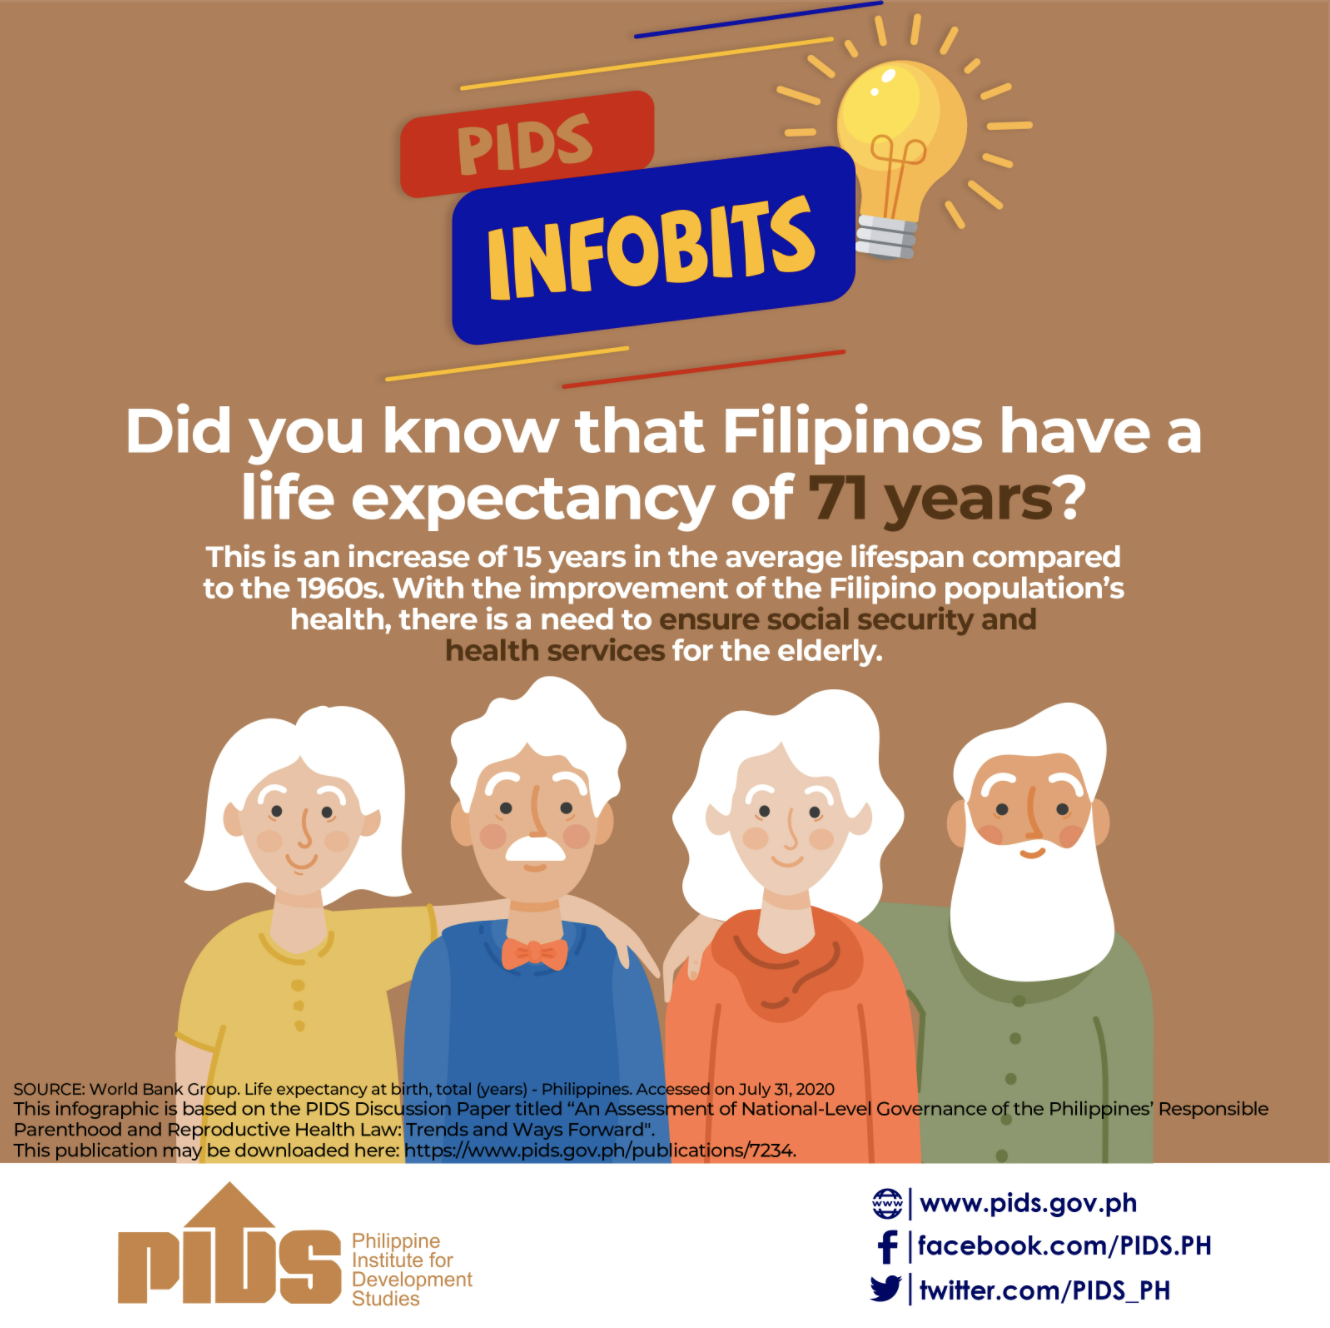 PIDS Philippine Institute for Development Studies